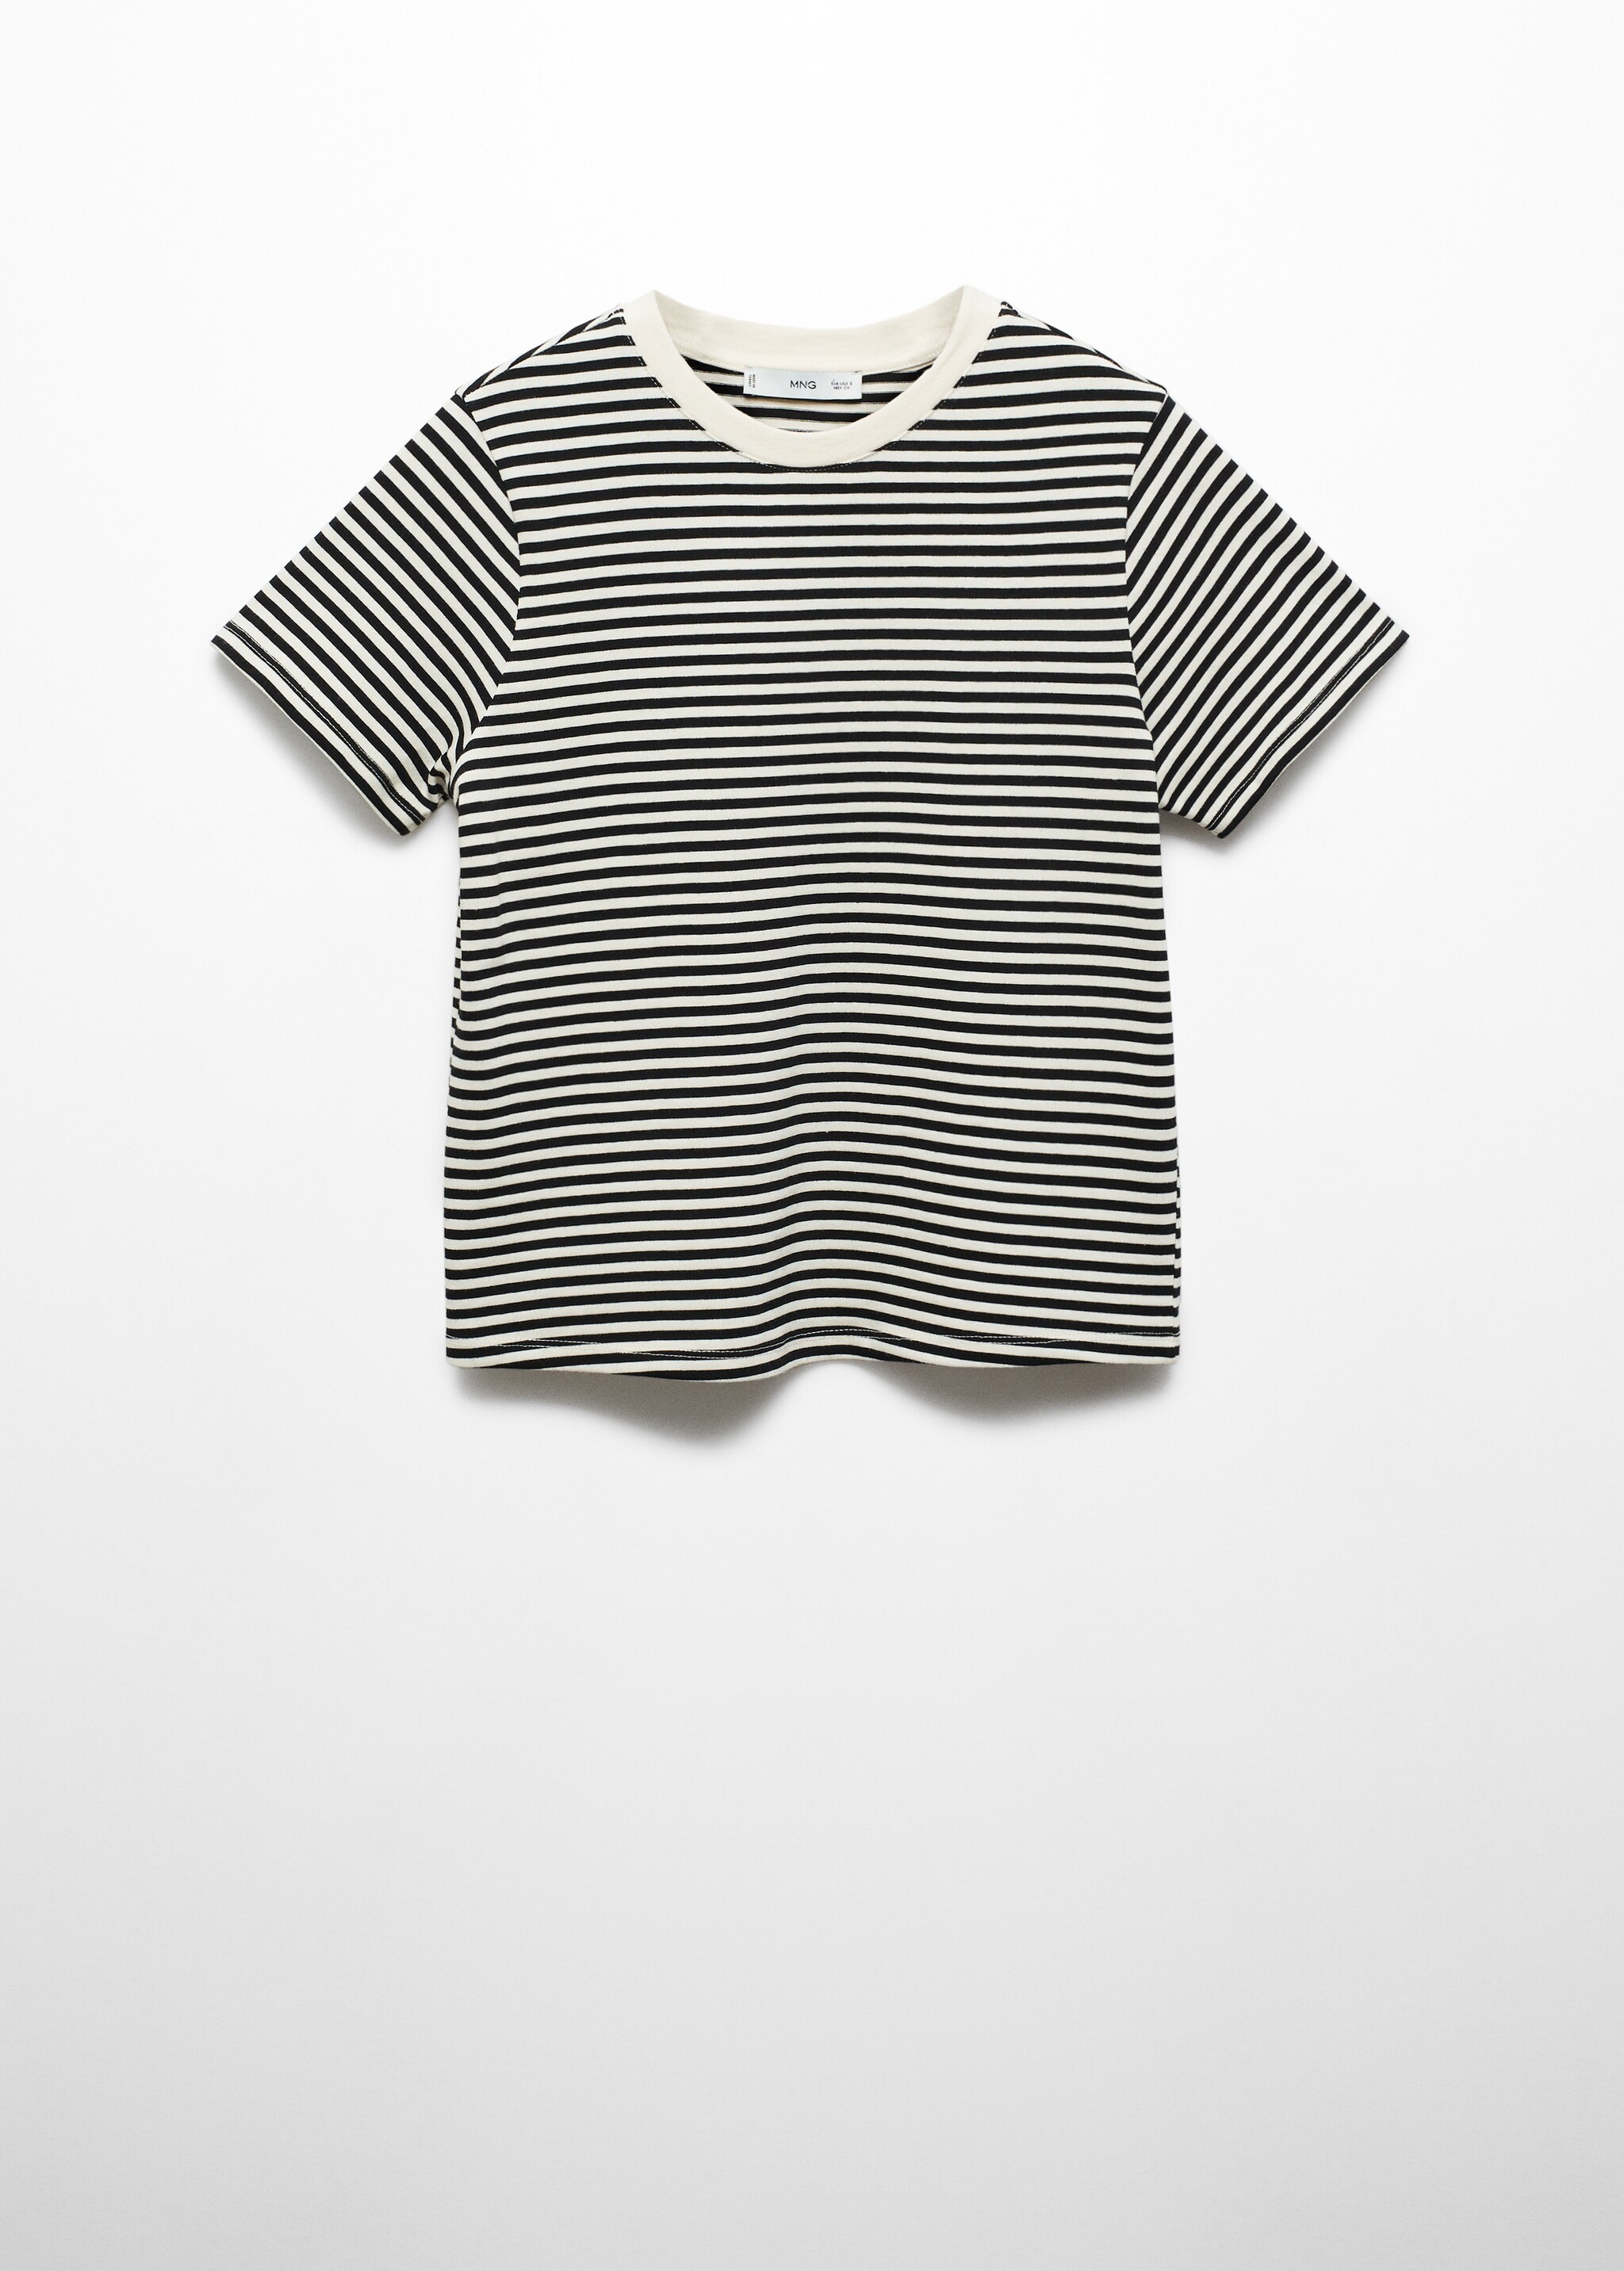 Camiseta algodón rayas - Artículo sin modelo